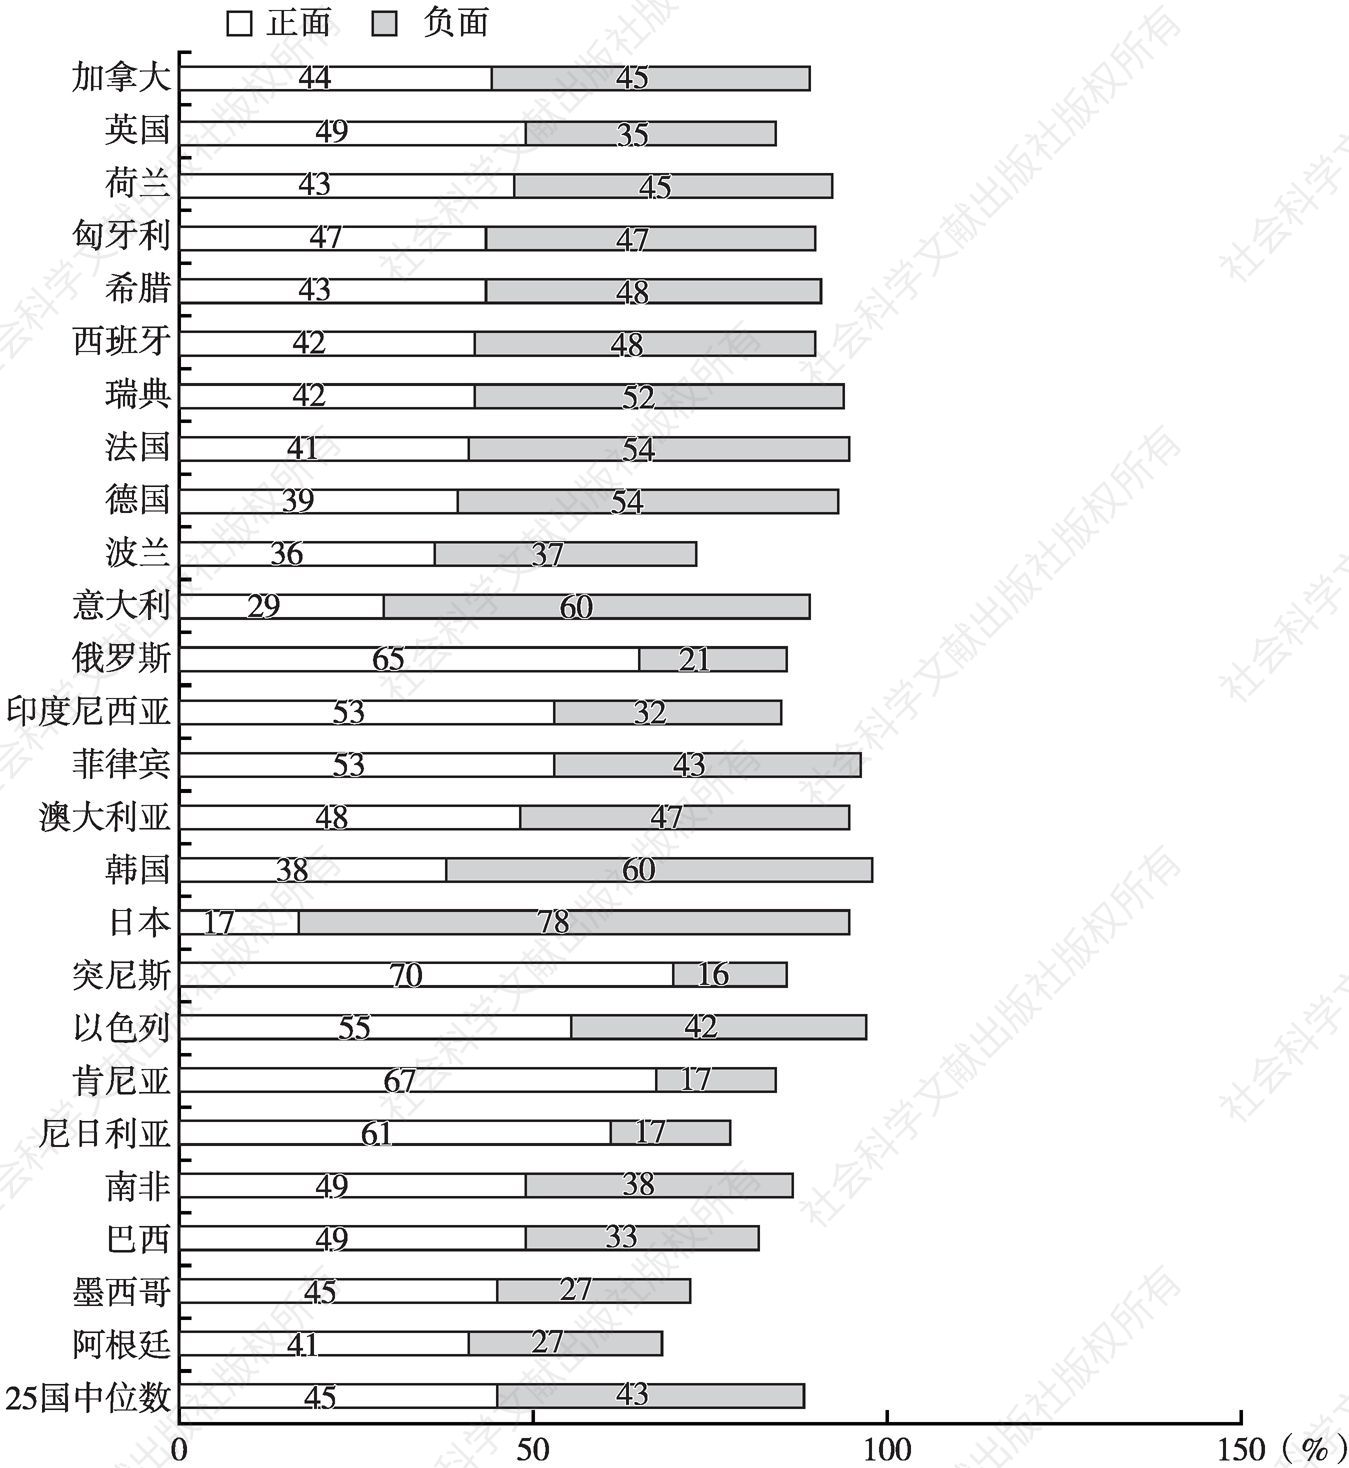 图3 25国受访者对中国的评价